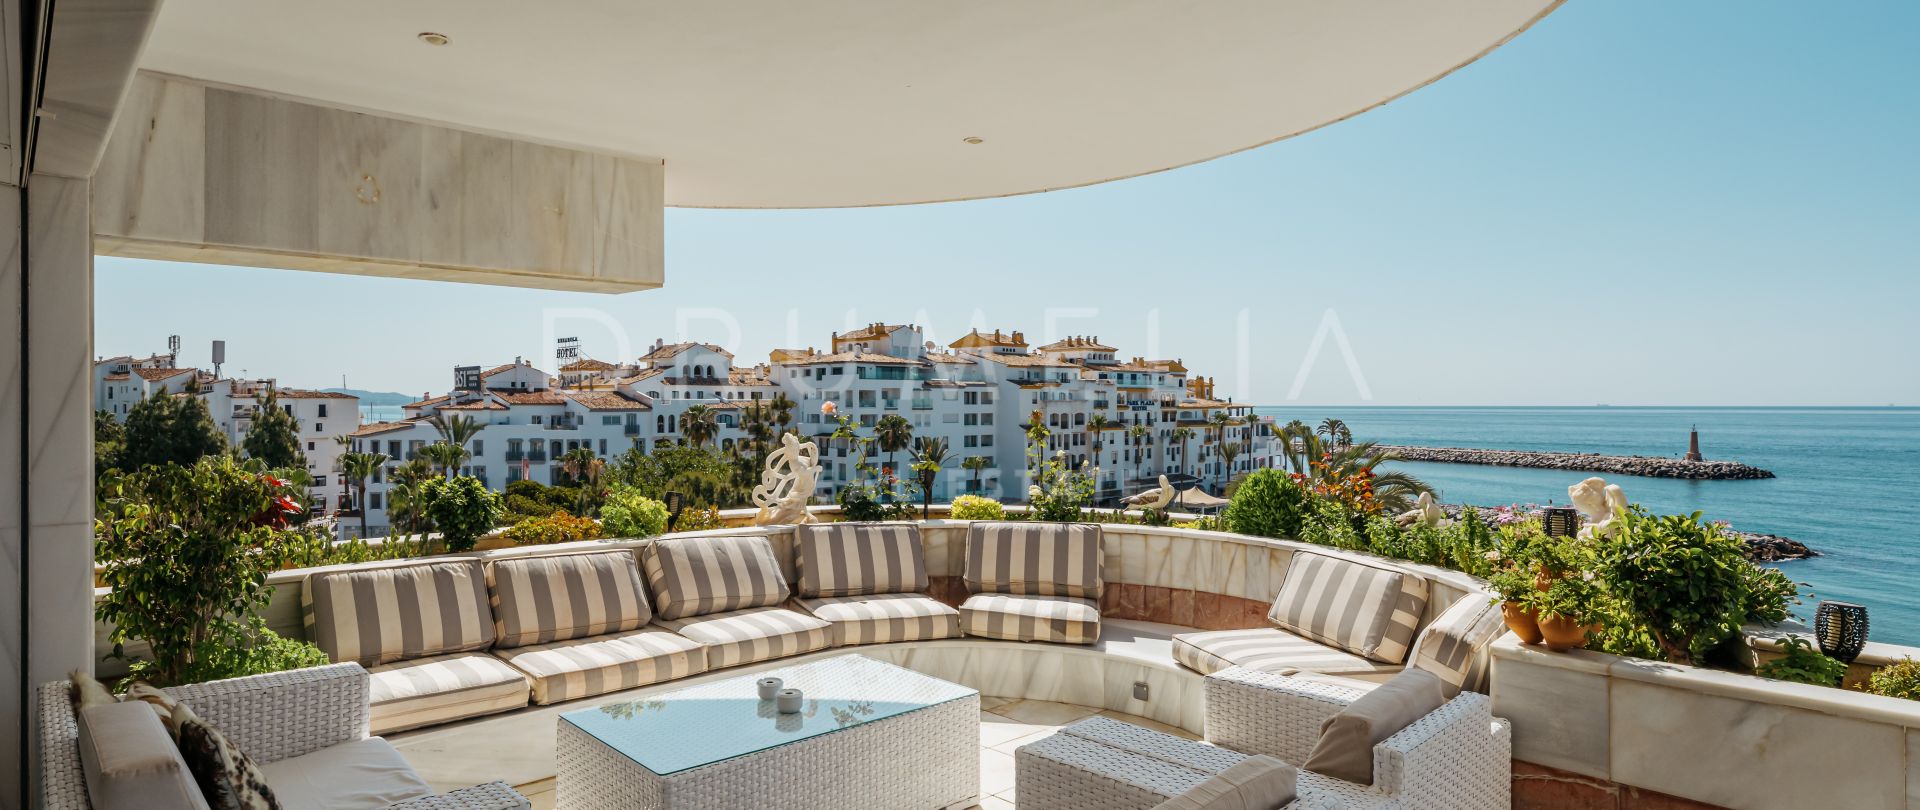 Einzigartiges Penthouse an der Strandpromenade mit herrlichem Blick und Pool in Puerto Banus, Marbella